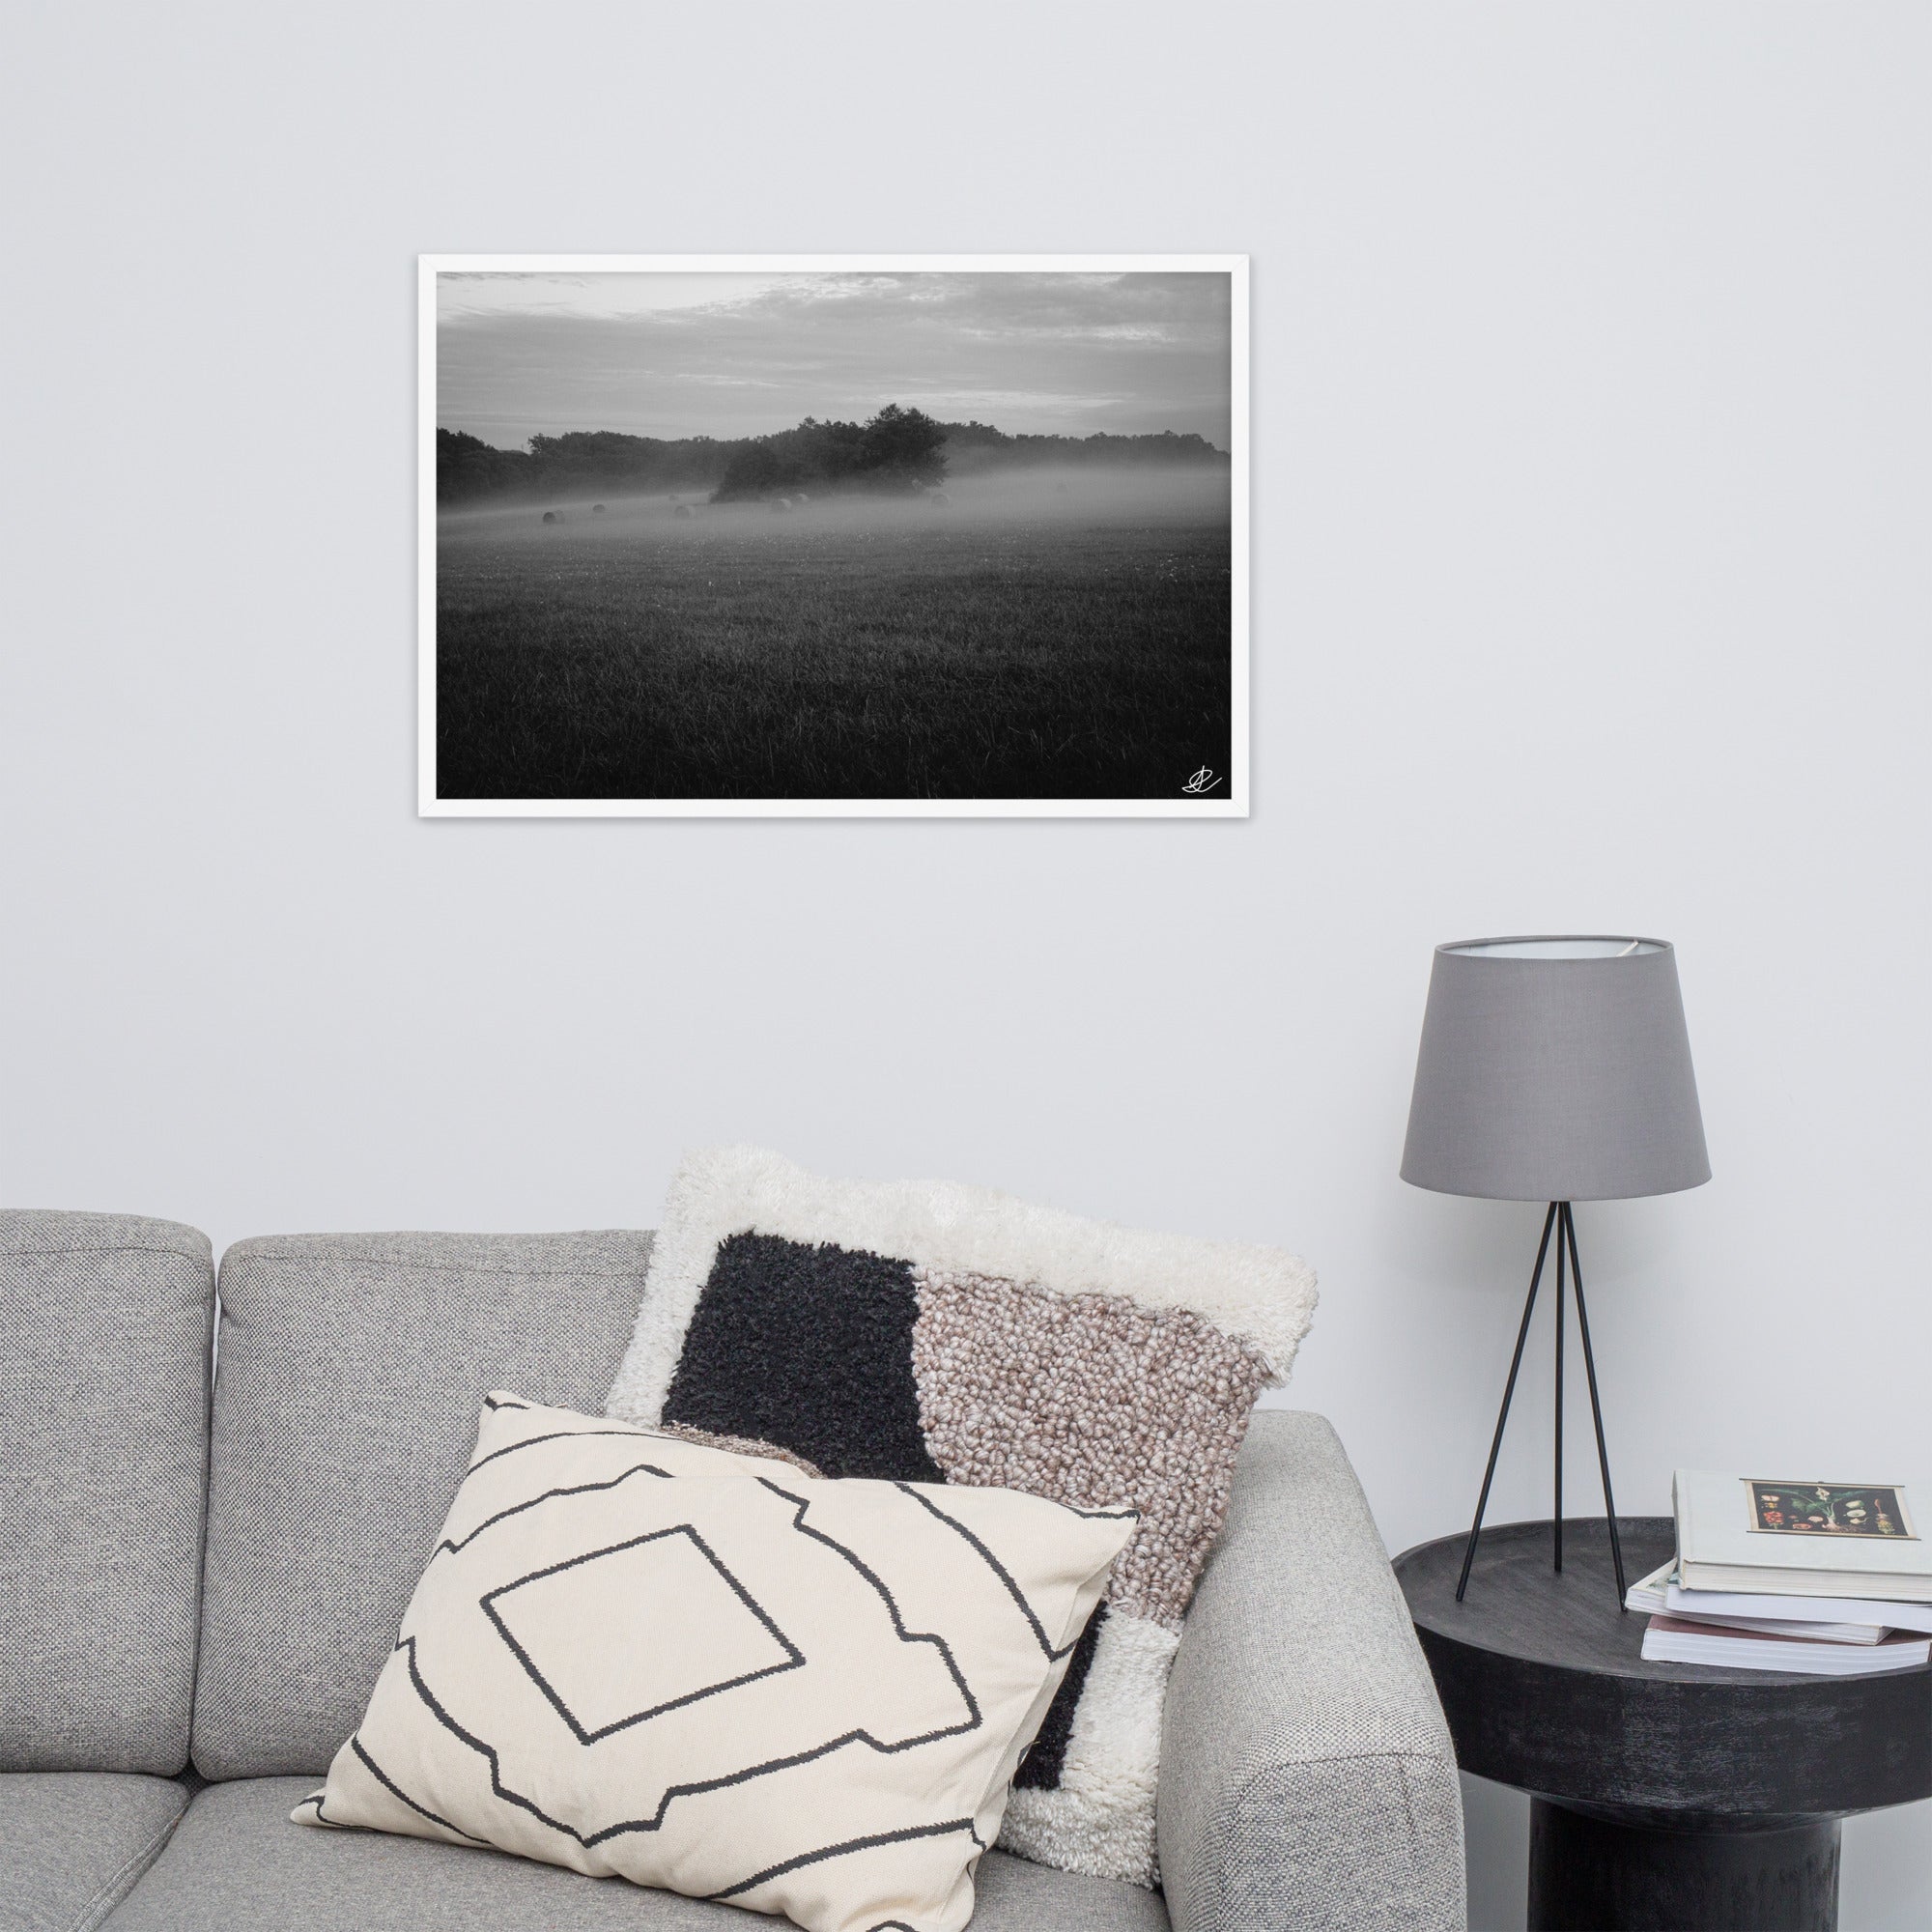 Photographie noir et blanc 'Brouillard' par Ilan Shoham, mettant en scène un paisible champ tourangeau où des ballots de paille émergent majestueusement du brouillard, incarnant la sérénité et la beauté mystique de la campagne française.